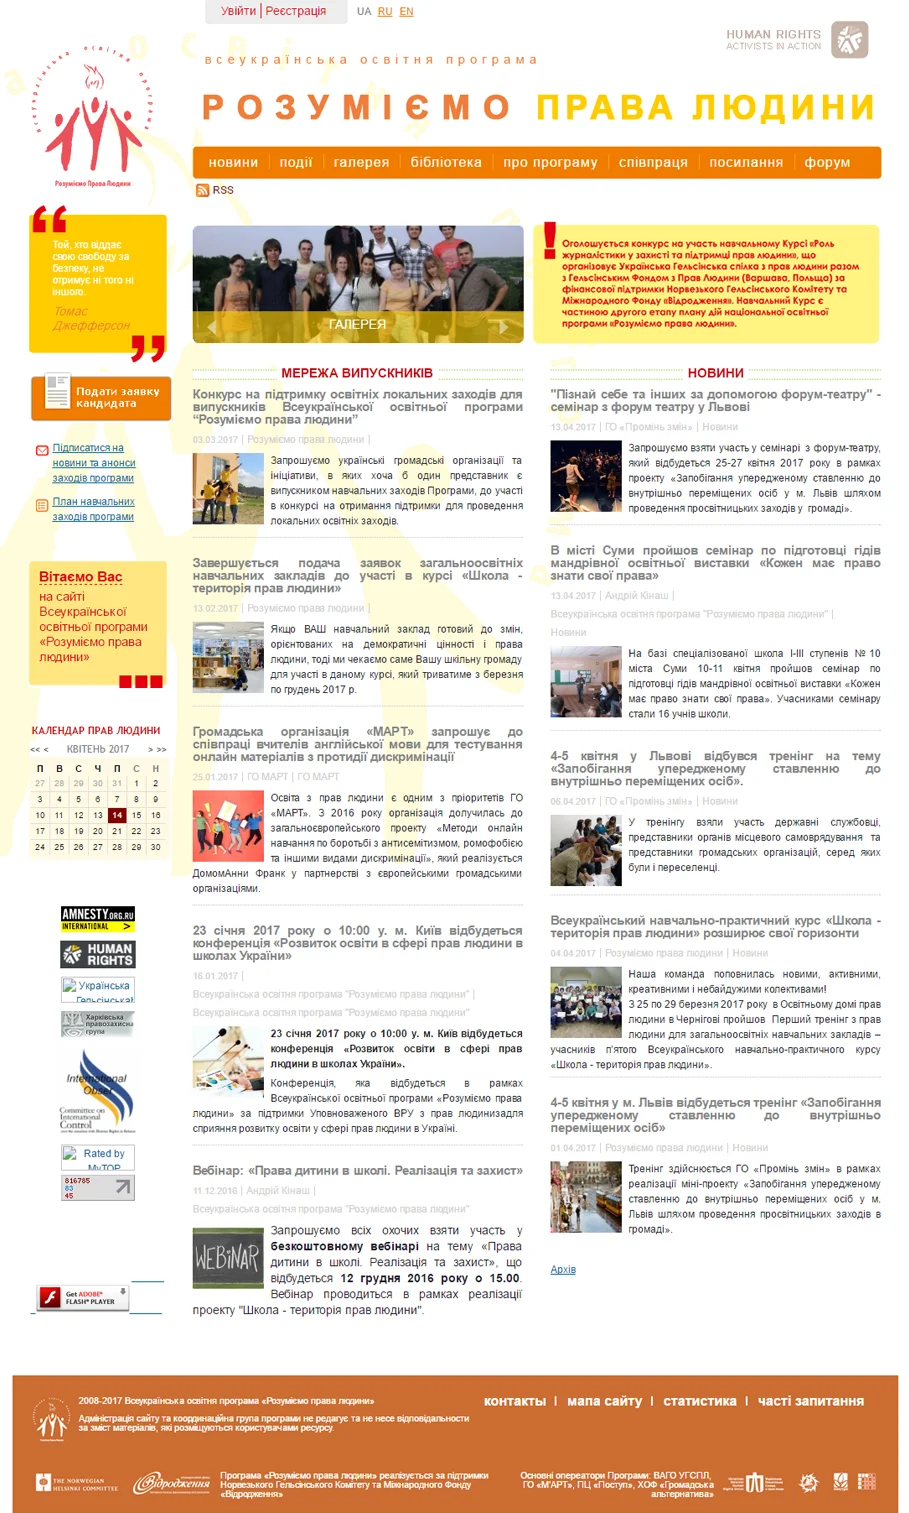 Создание сайта всеукраинской образовательной программы «Понимаем права человека» - Главная страница